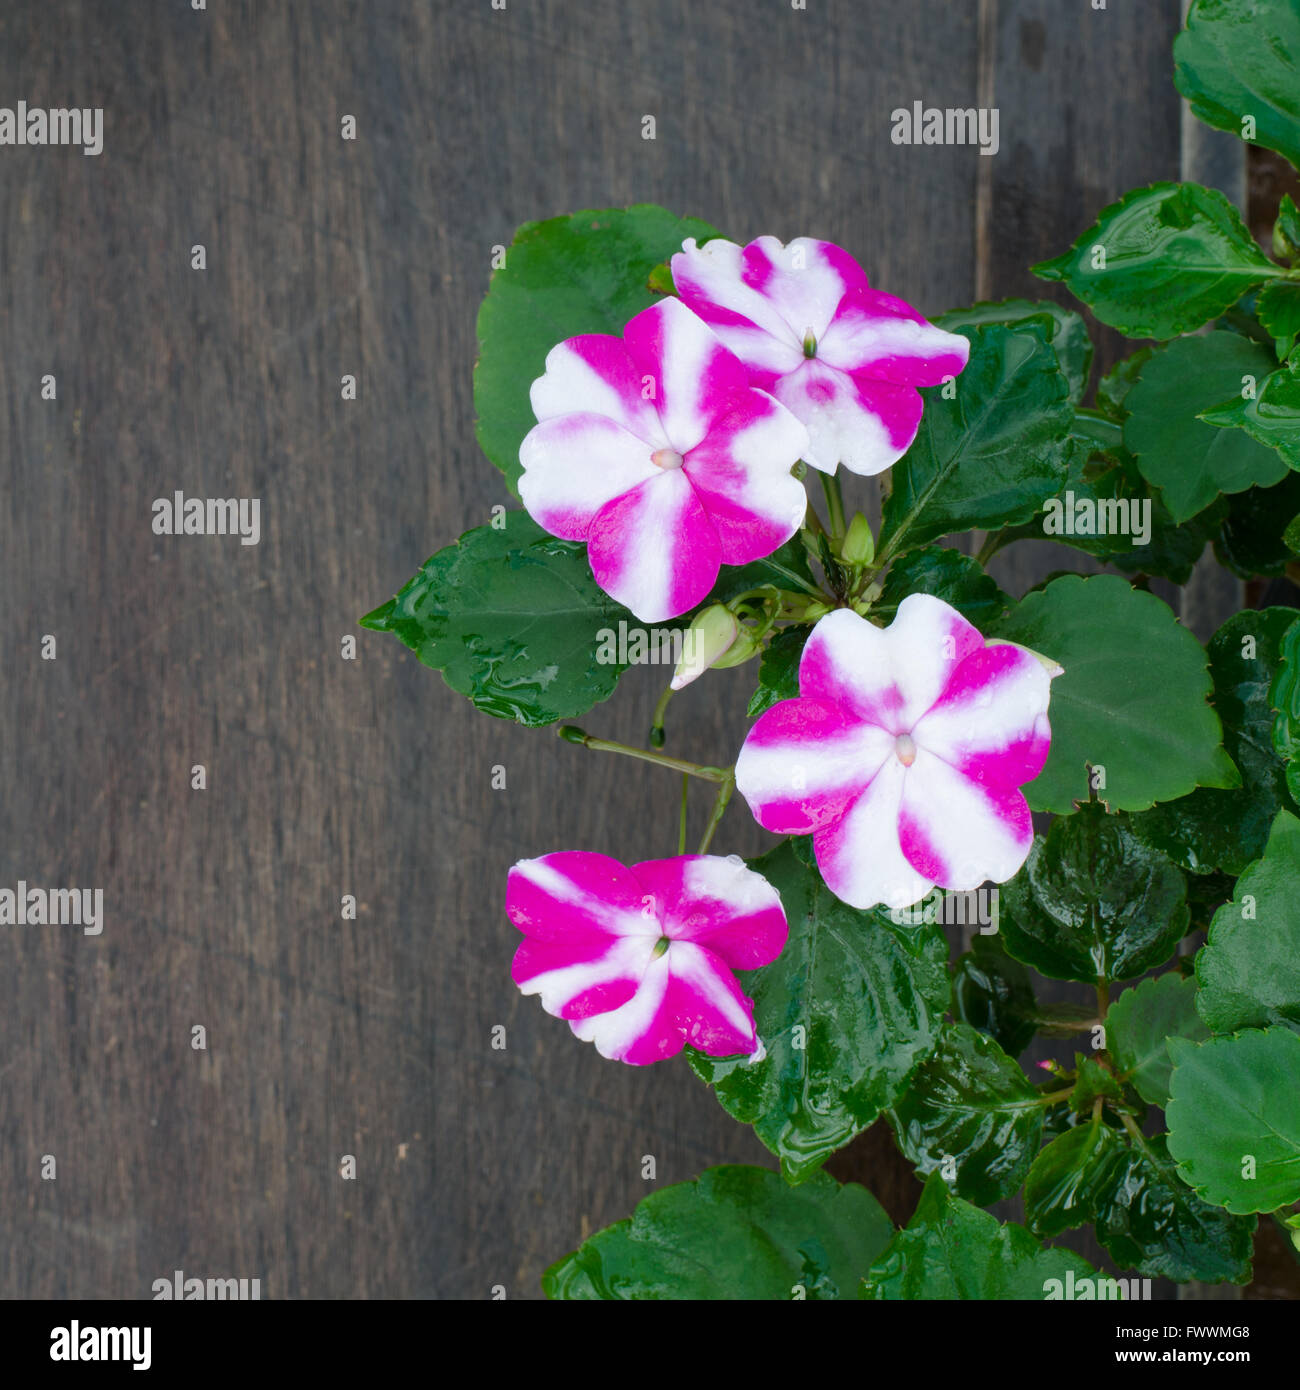 Impatiens-Blume auf hölzernen Hintergrund Stockfoto